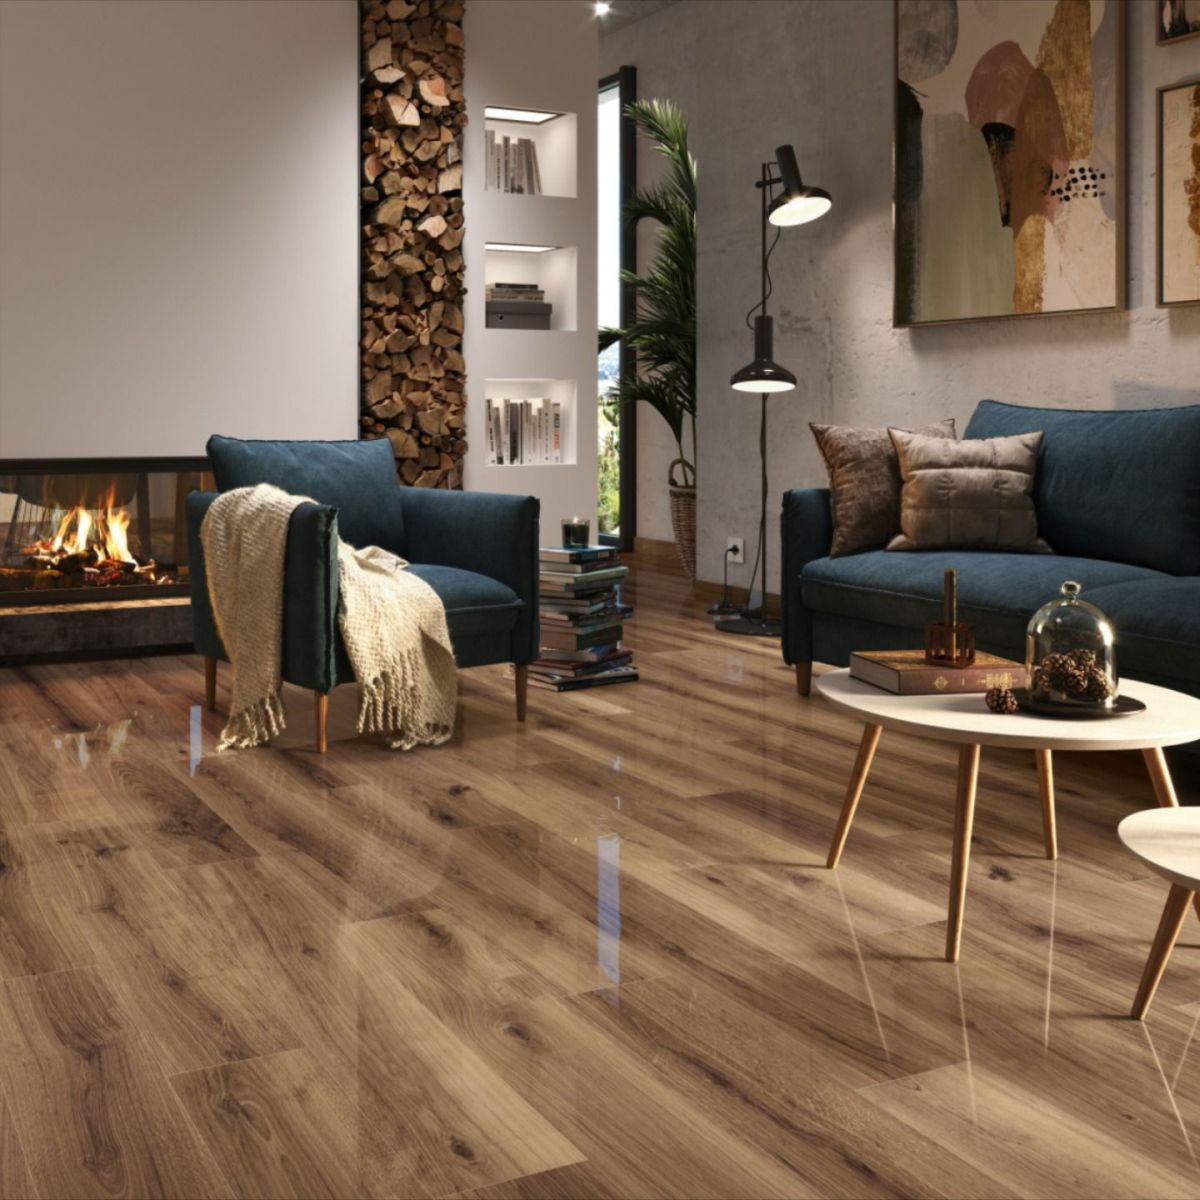 Ceramic floor that looks like wood